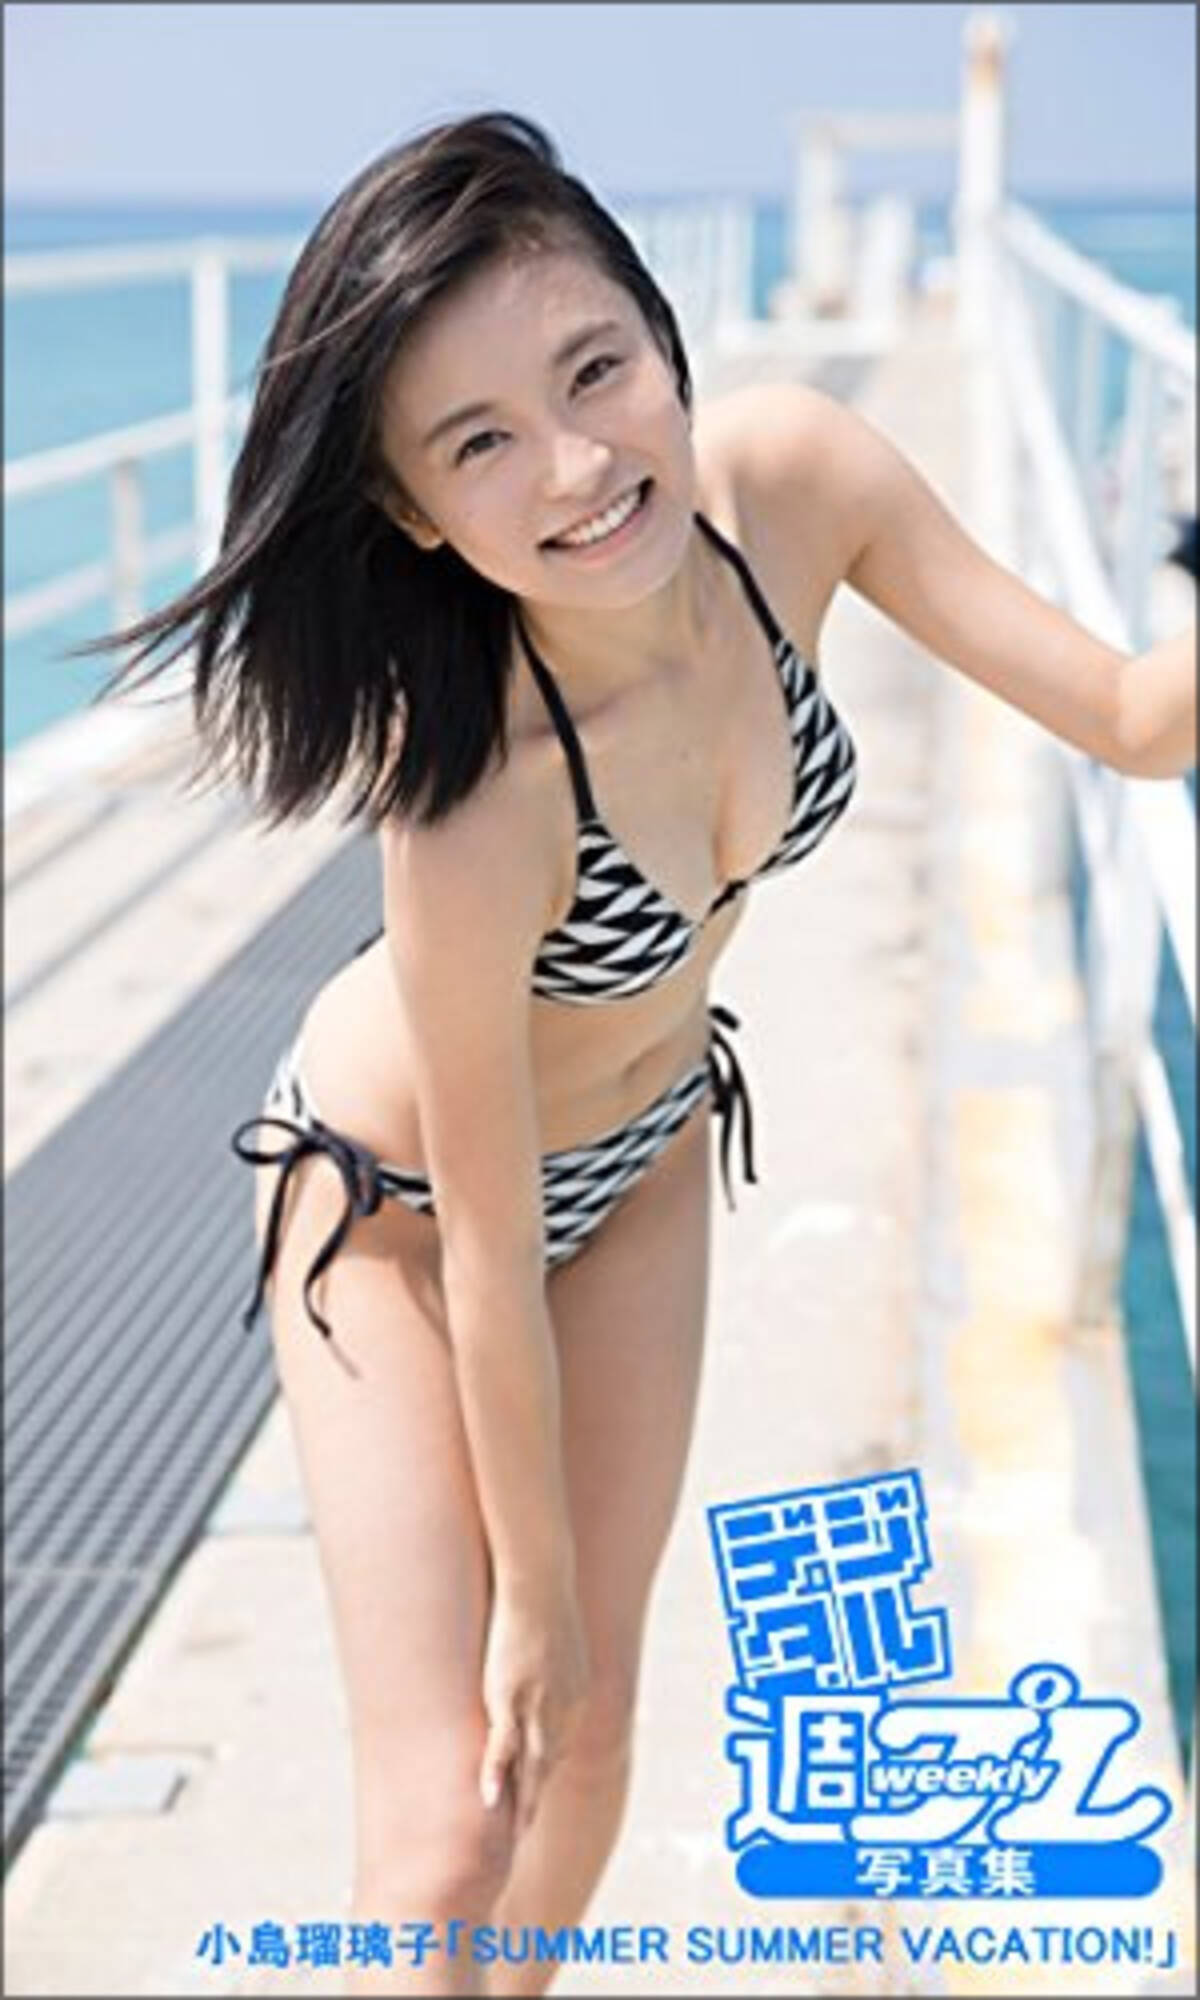 小島瑠璃子 夏女グラビアふたたび 眩しすぎるビキニショットをファンも期待 16年11月15日 エキサイトニュース